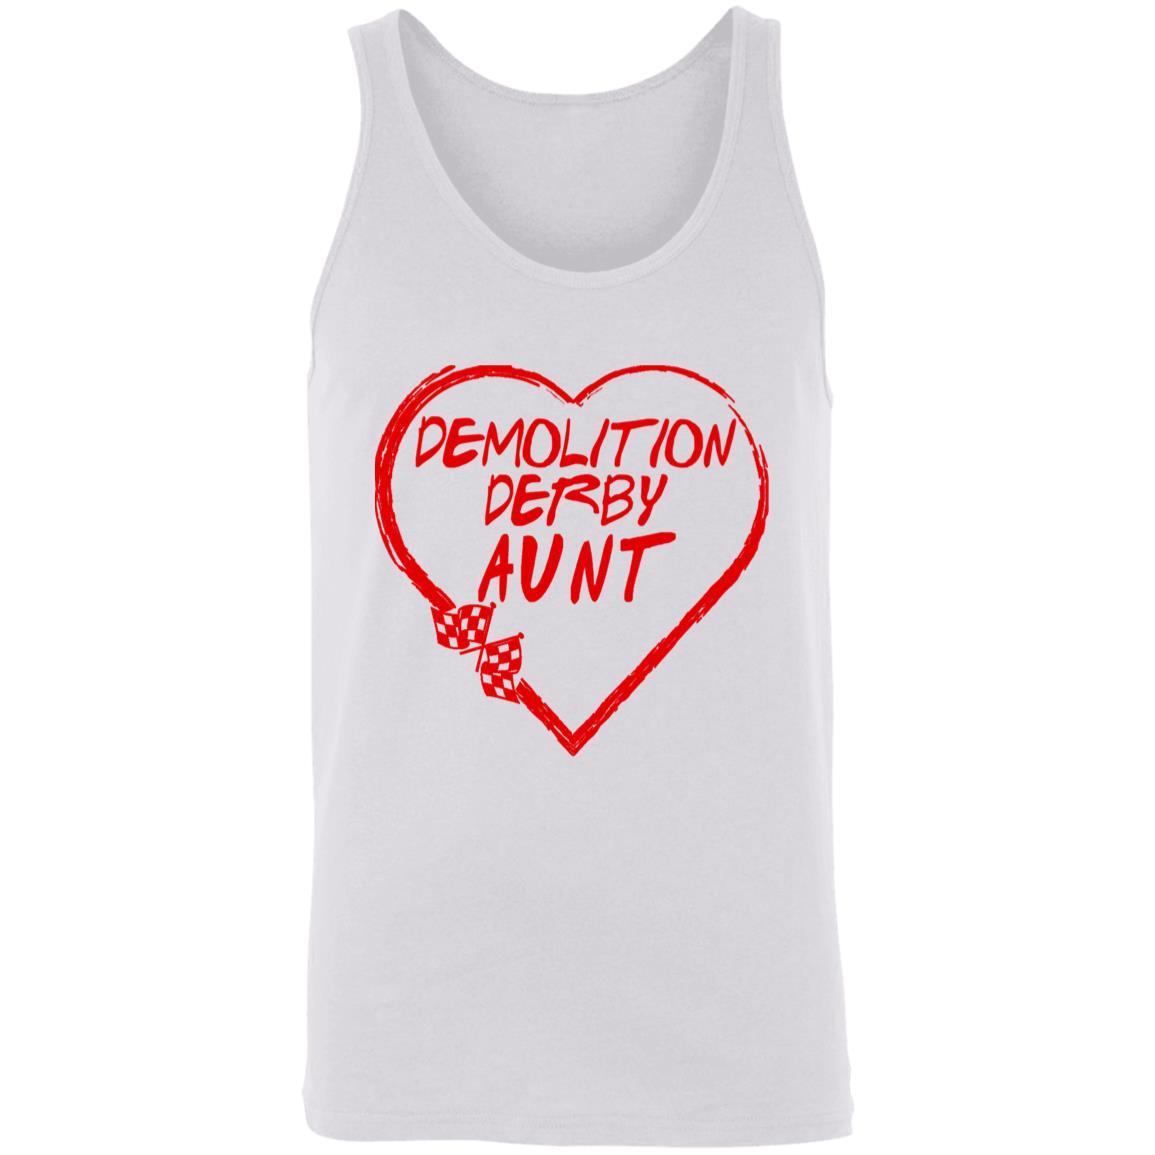 Demolition Derby Aunt Heart Unisex Tank